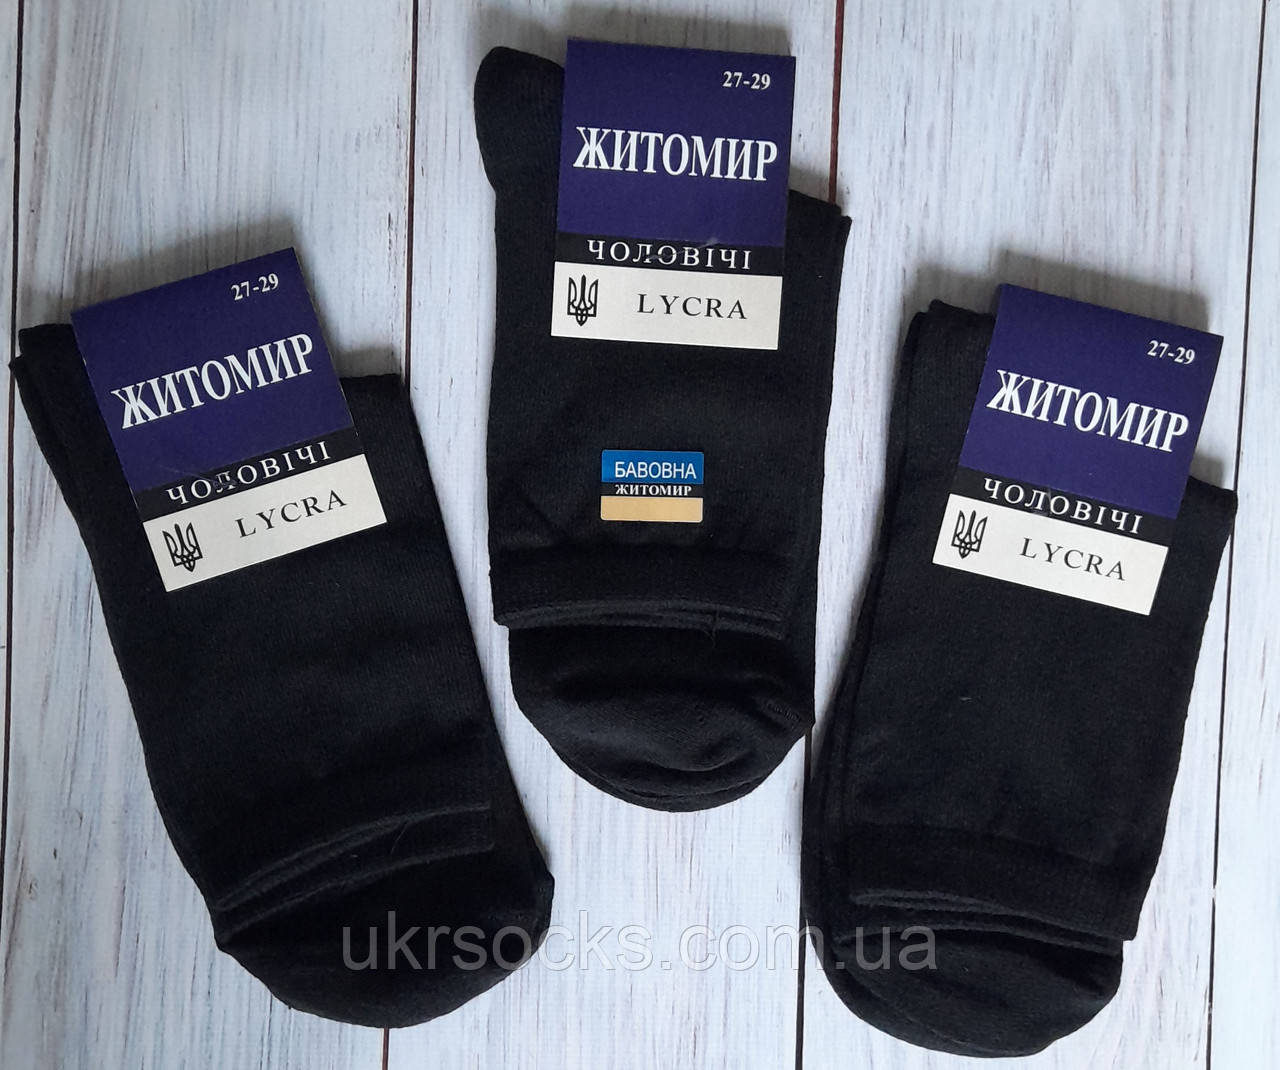 Шкарпетки чоловічі Житомир класика чорні 42-45  | 12 пар